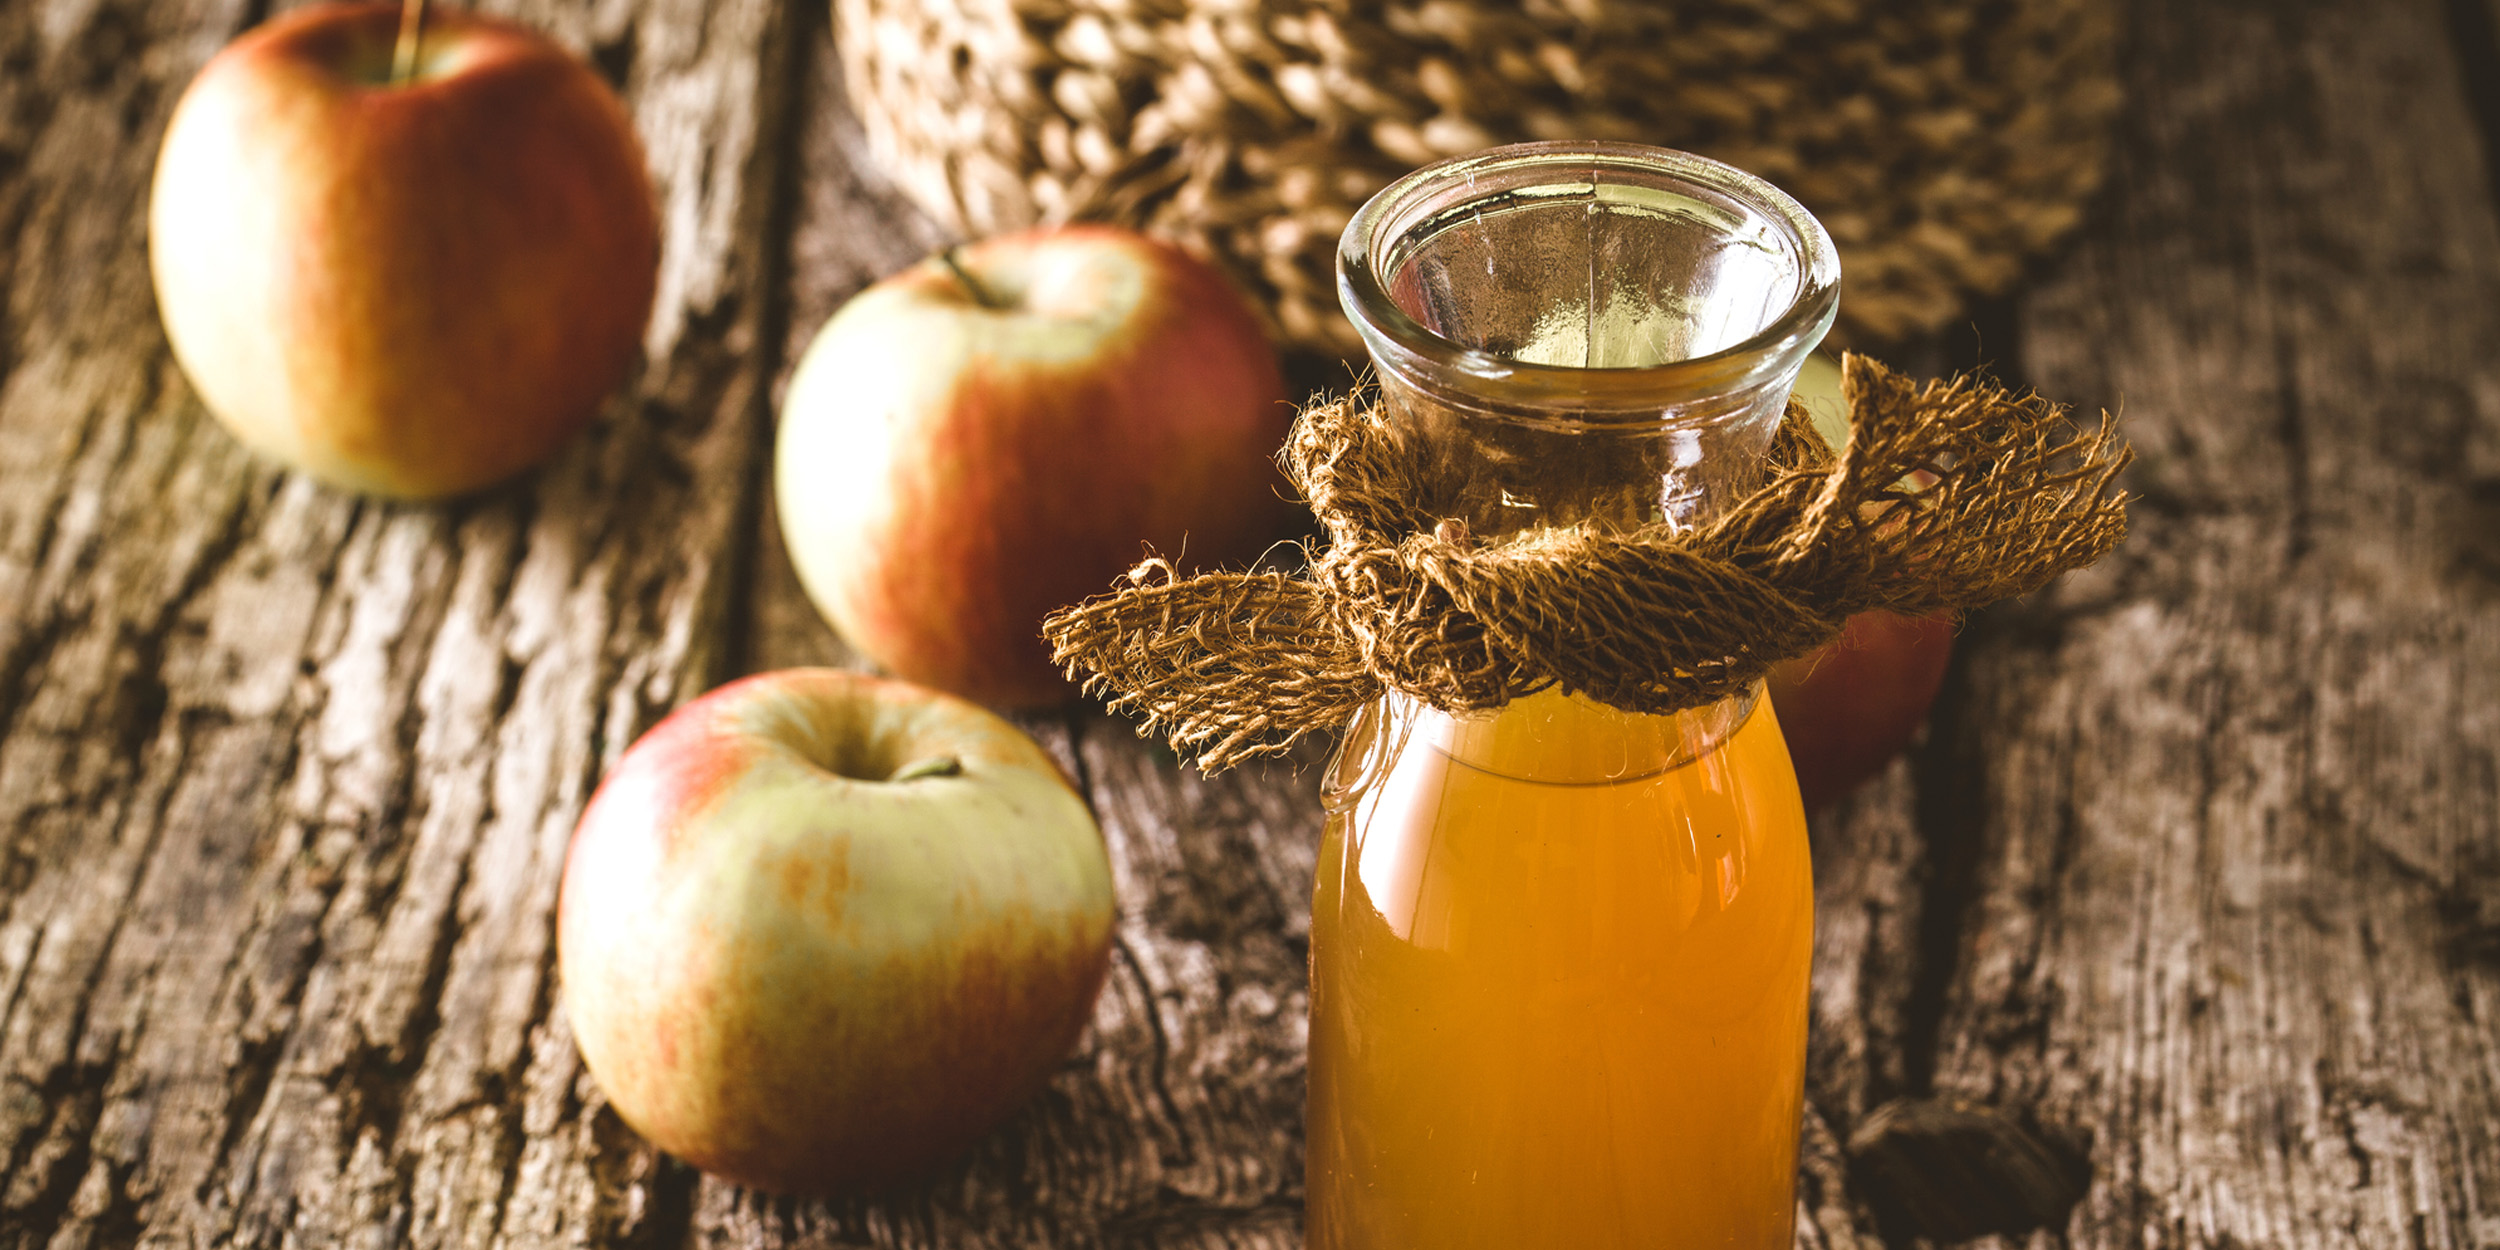 Как из яблок сделать домашнее вино? Рецепт приготовления вина из яблок – в нашей статье!